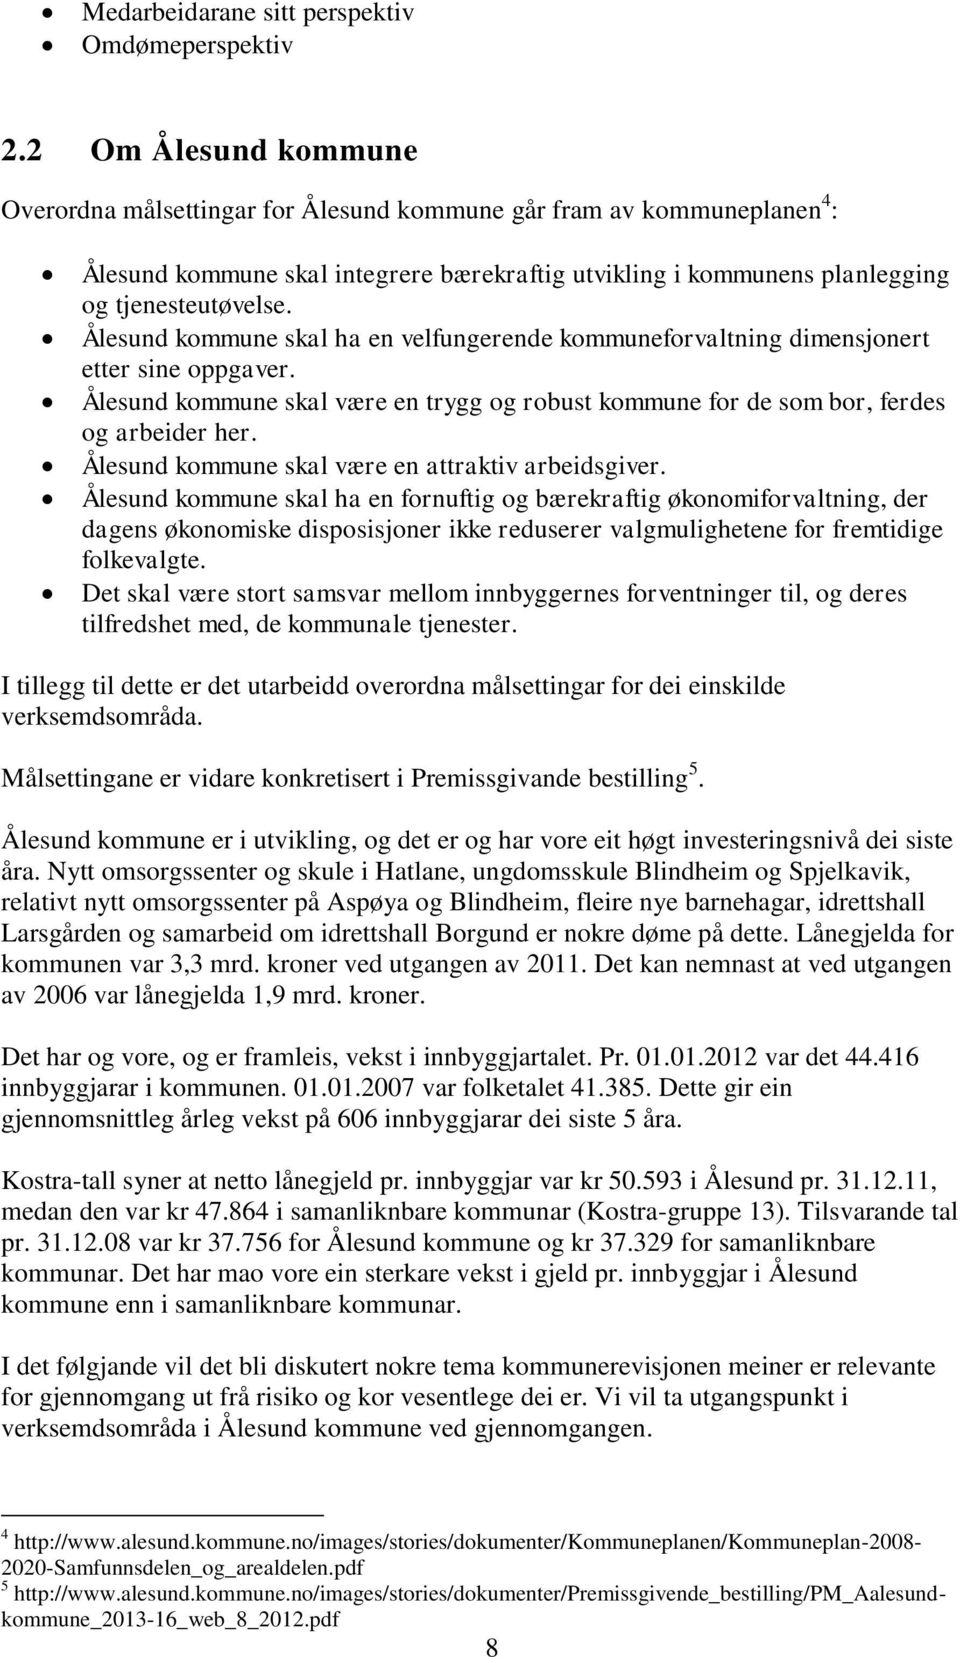 Ålesund kommune skal ha en velfungerende kommuneforvaltning dimensjonert etter sine oppgaver. Ålesund kommune skal være en trygg og robust kommune for de som bor, ferdes og arbeider her.